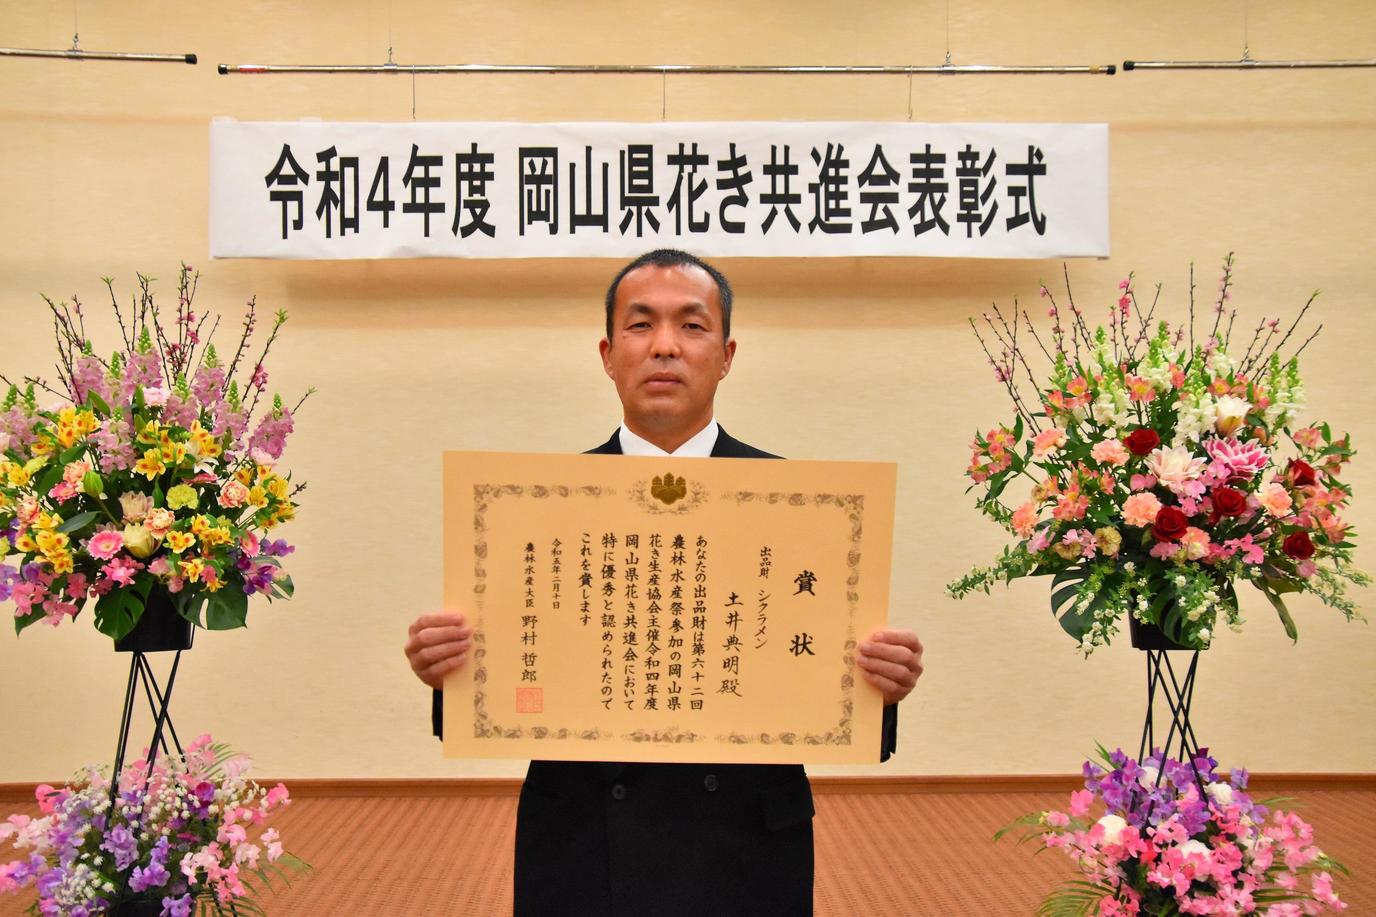 農林水産大臣賞を受賞した土井典明さんの内容を表示